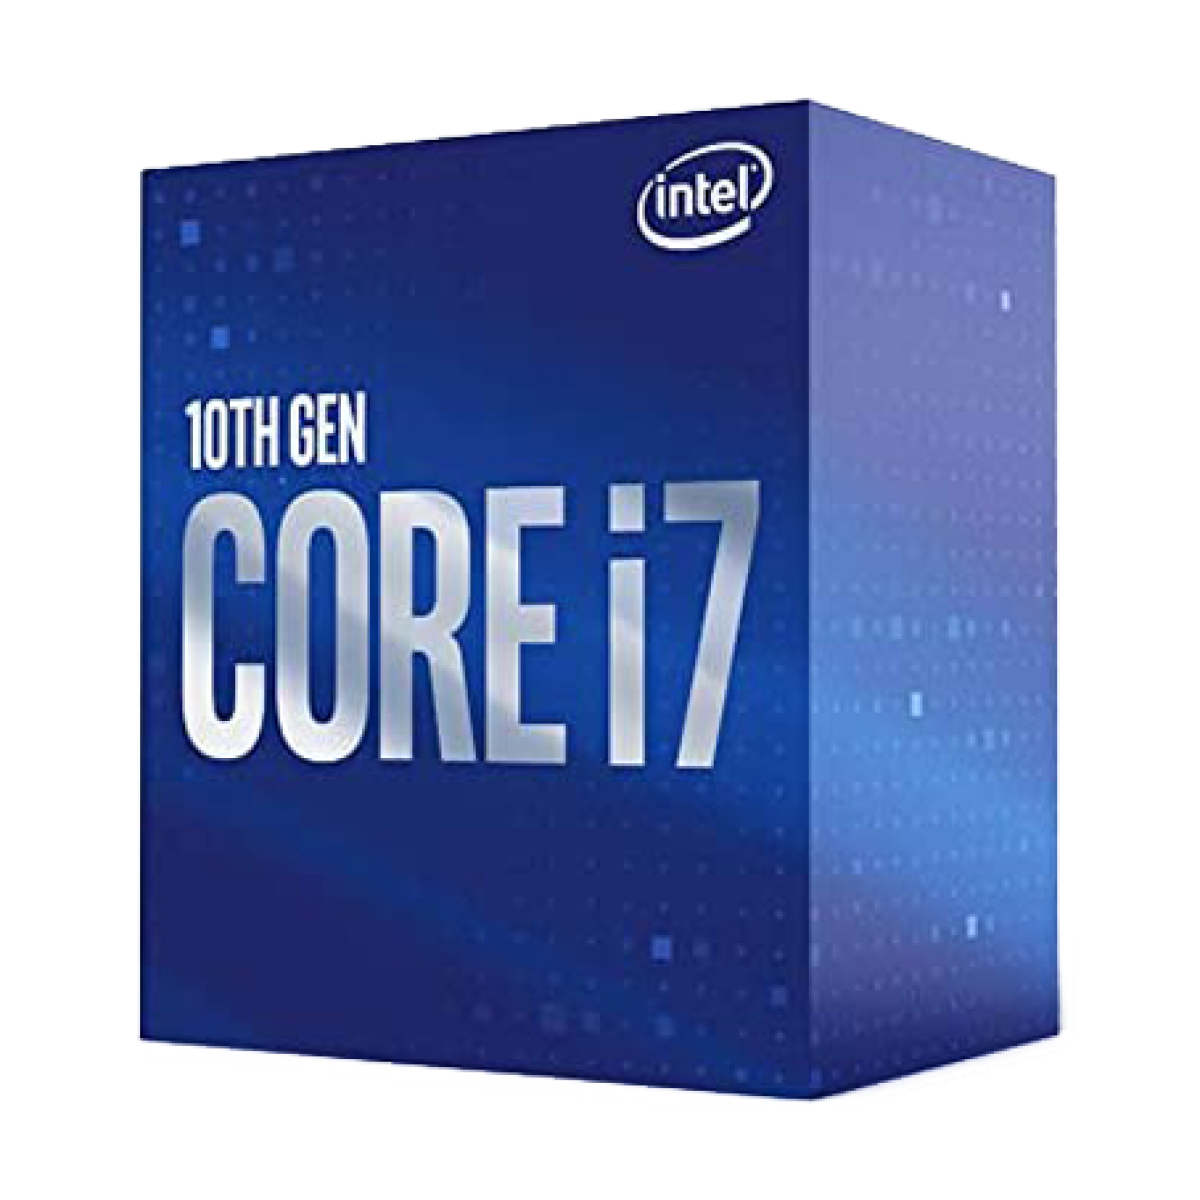 Processador Intel Core i7 10700KF, 3.80GHz (5.10GHz Turbo), 10ª Geração, 8-Cores 16-Threads, LGA 1200, S/VÍDEO, BX8070110700KF